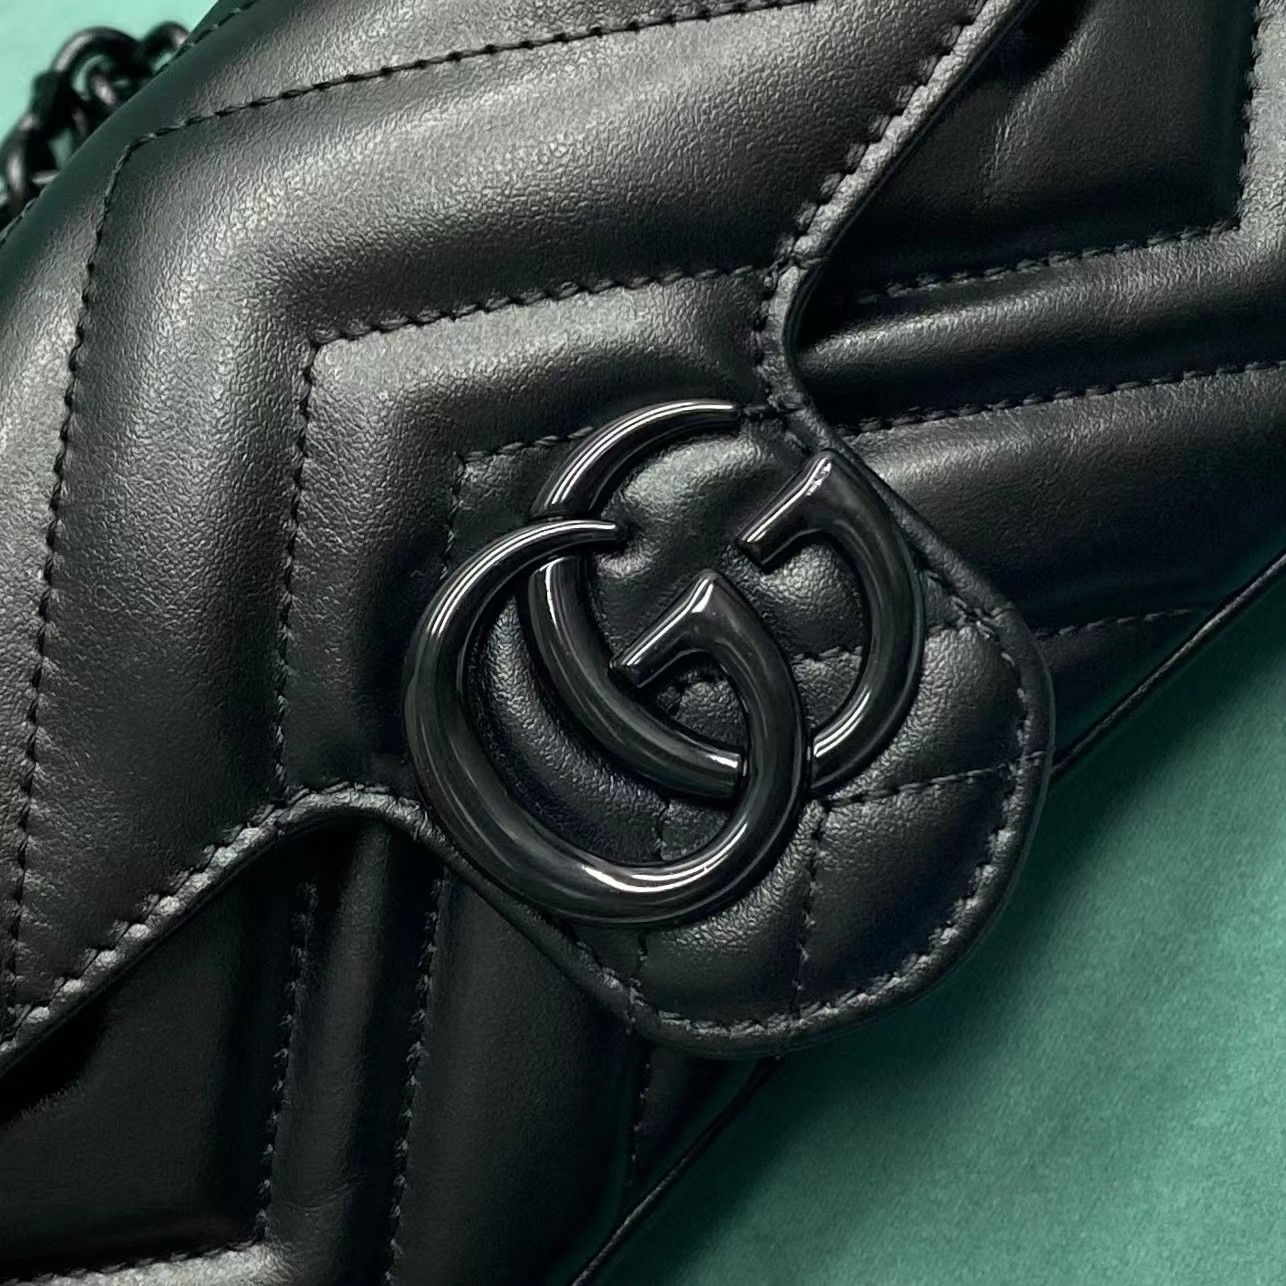 【P800】Gucci mini马卡龙系列 古驰新款黑色原厂皮marmont链条包斜挎包